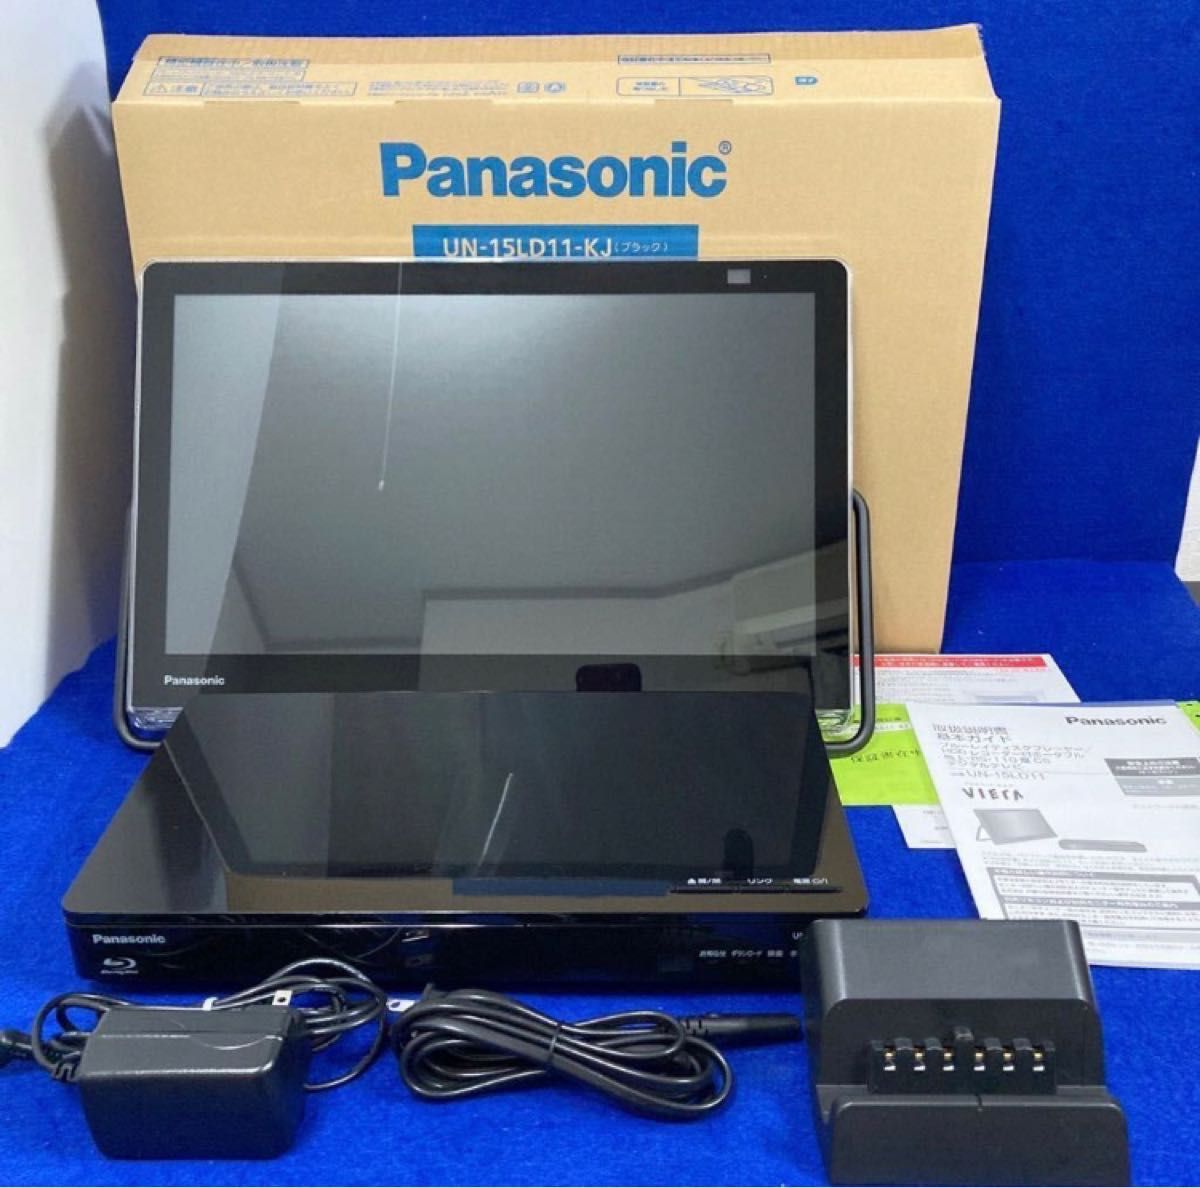 Panasonic プライベートビエラ UN-15LD11 HDDレコーダー付ポータブルTV